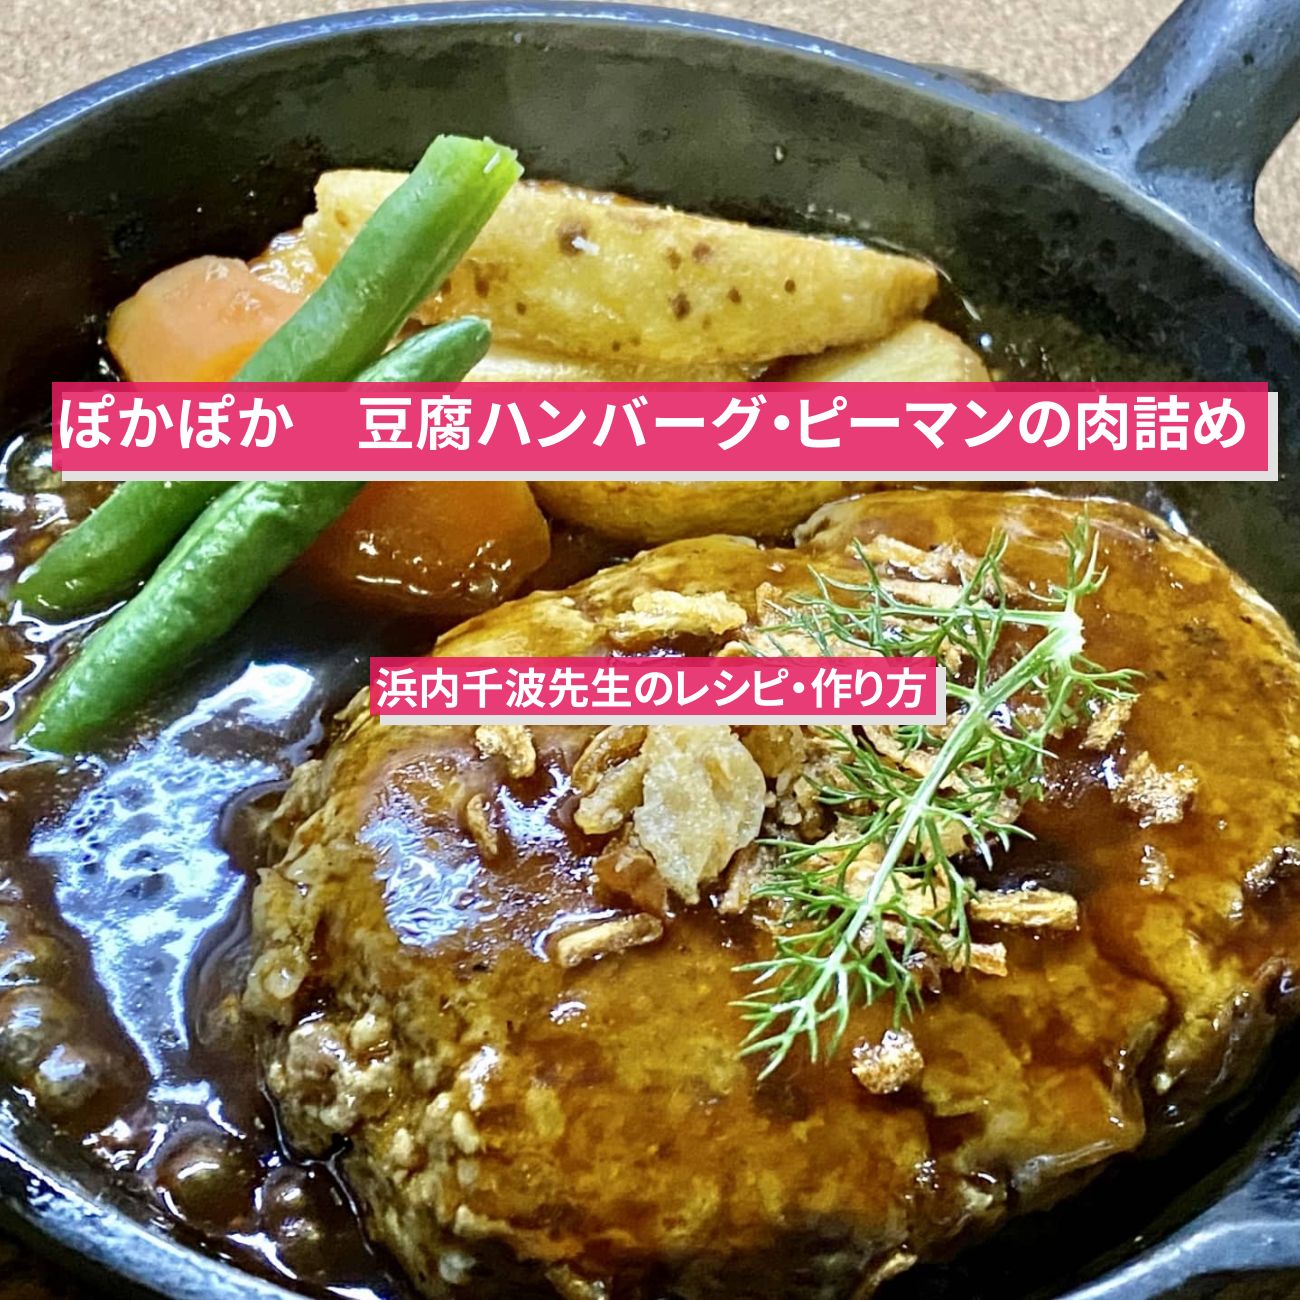 【ぽかぽか】『豆腐ハンバーグ・ピーマンの肉詰め』浜内千波先生のレシピ・作り方